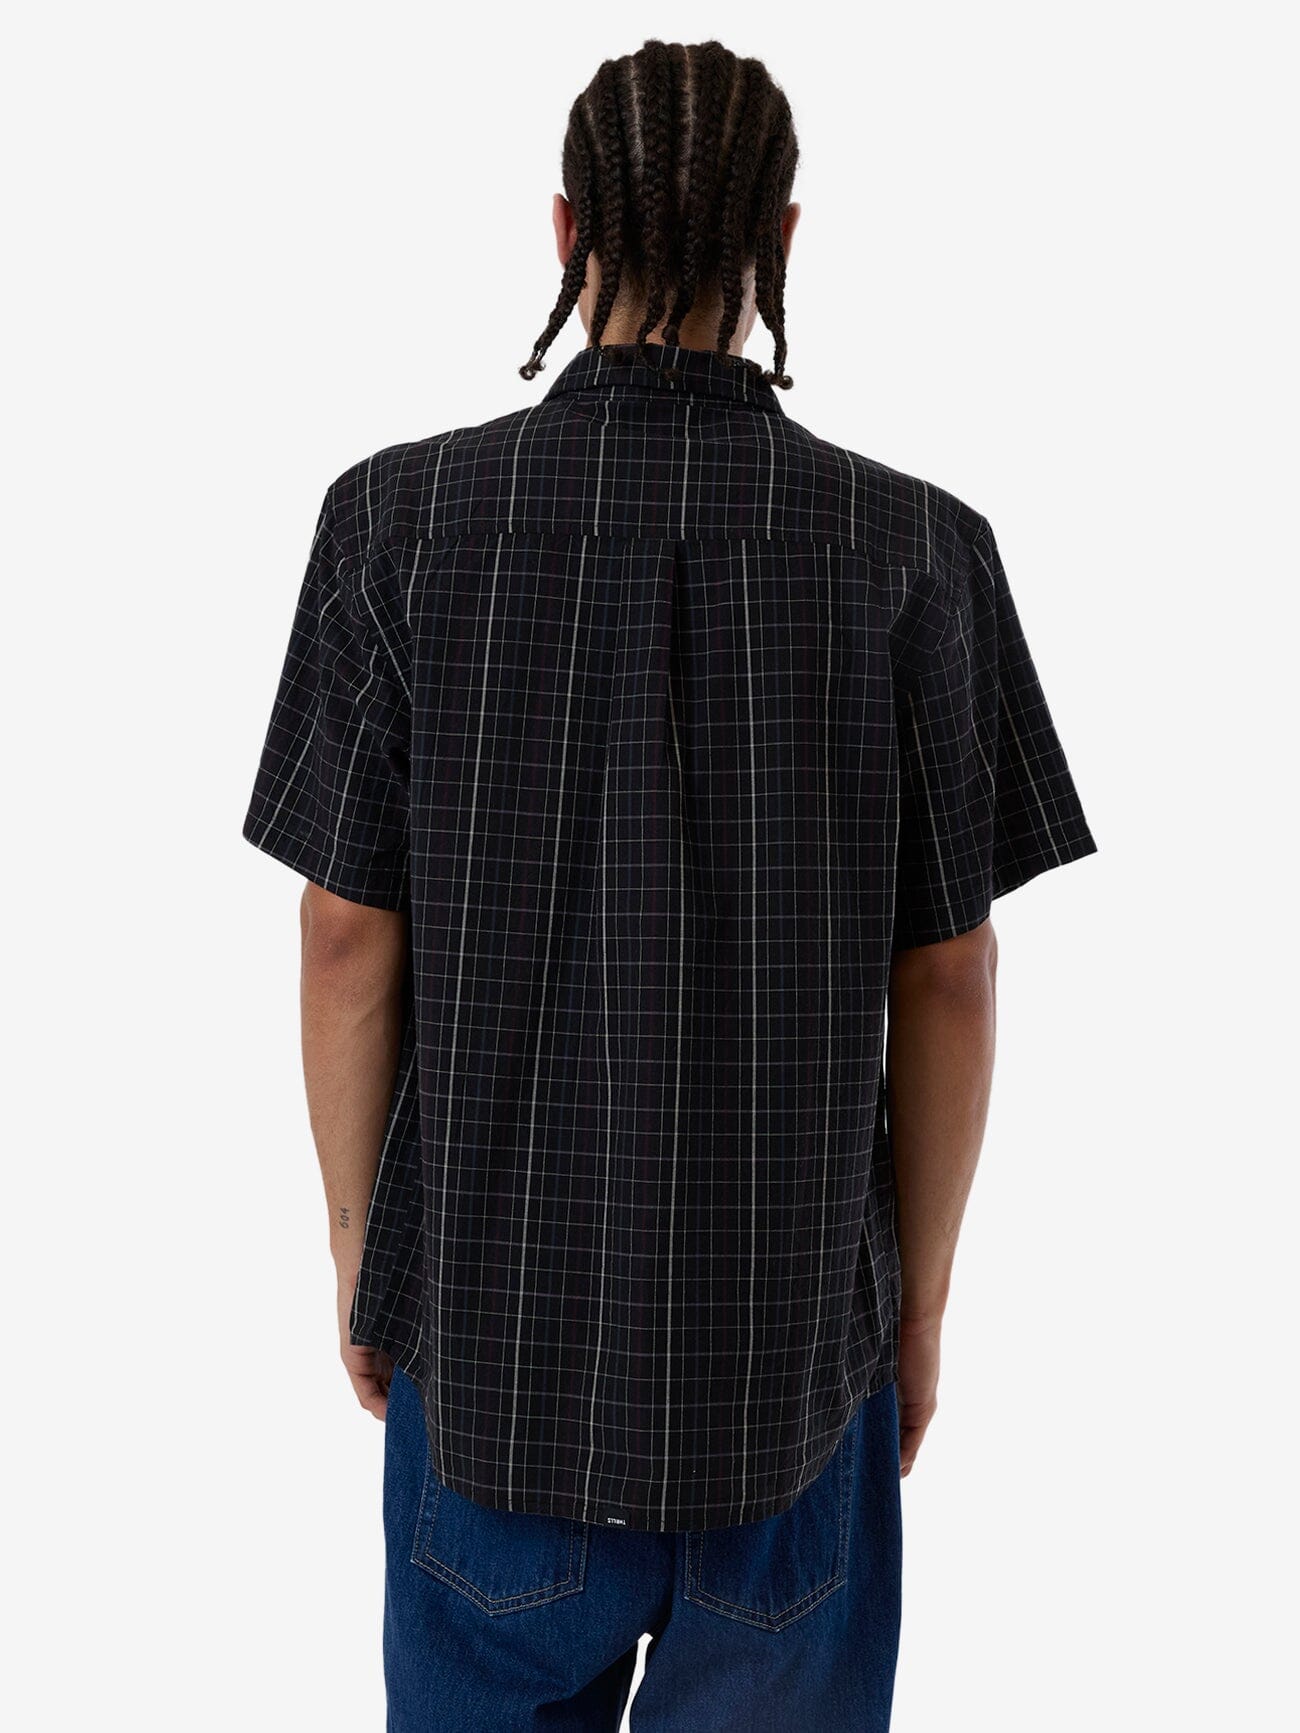 Lockstar Short Sleeve Shirt - Black XS